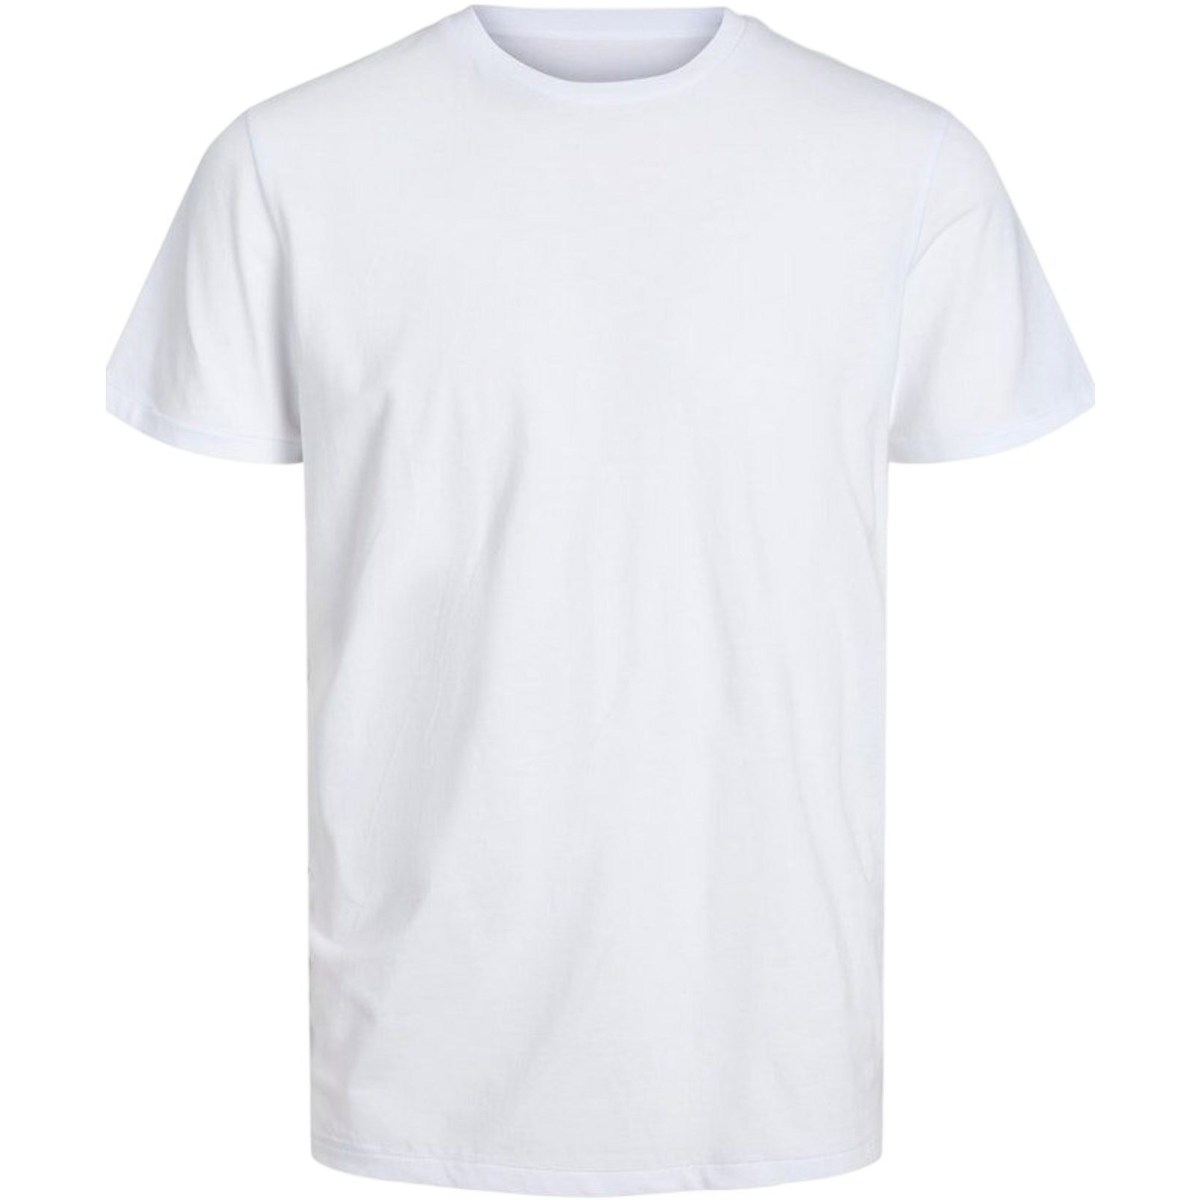 tekstylia Męskie T-shirty z krótkim rękawem Premium By Jack&jones 12221298 Biały